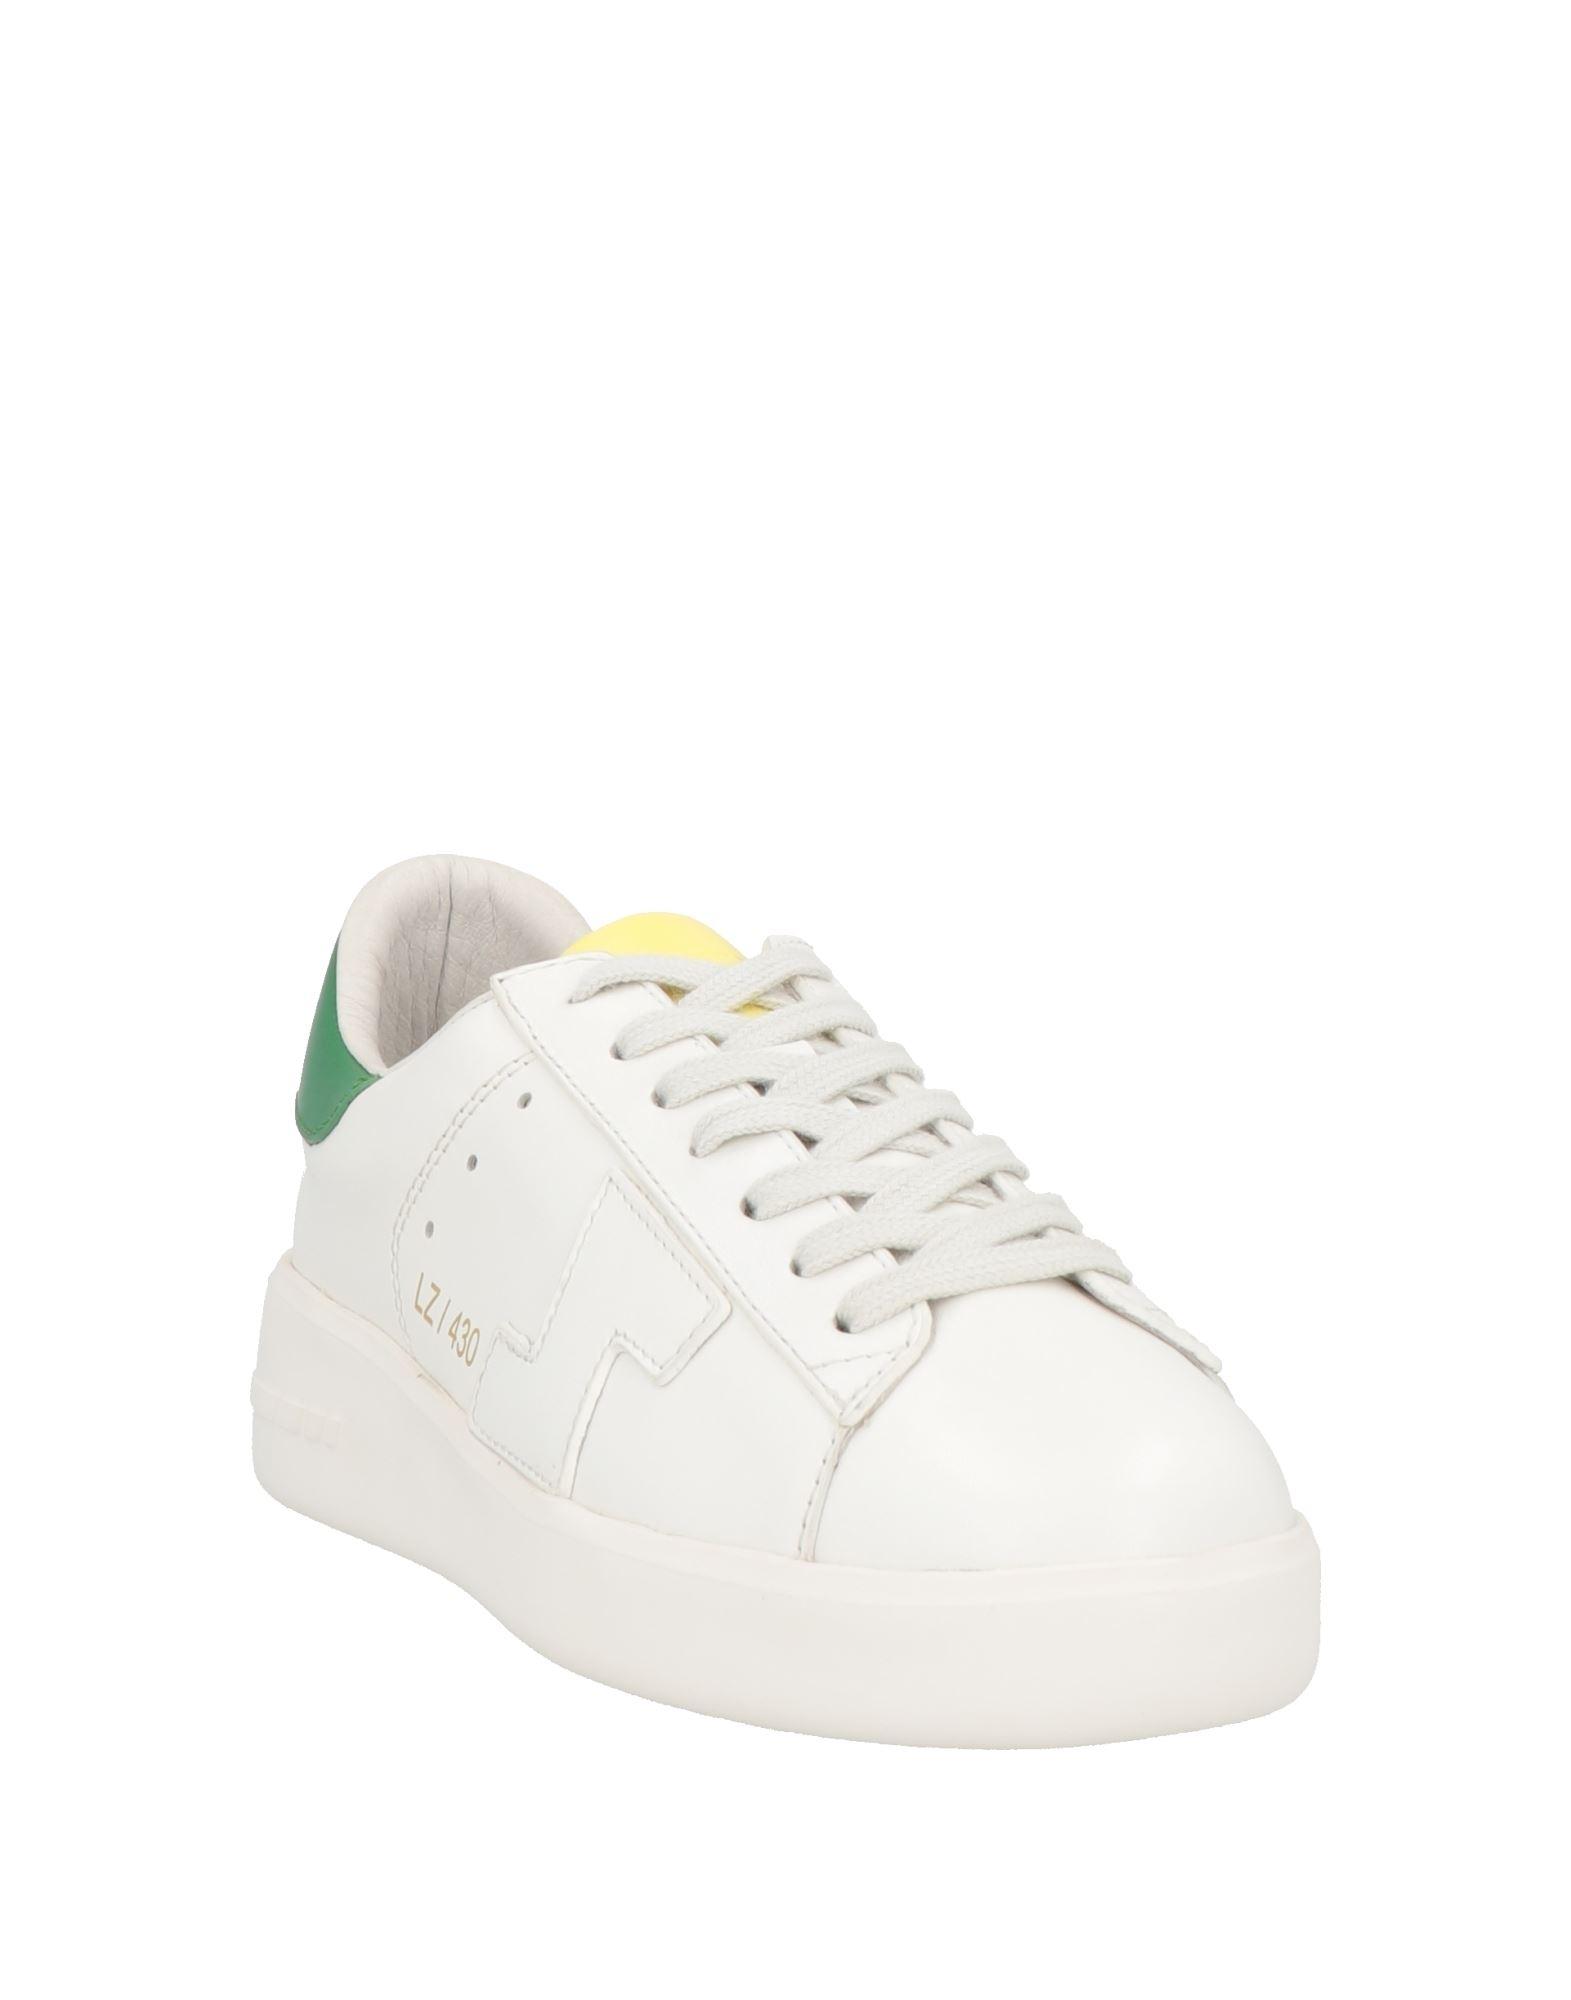 Lola Cruz Sneakers in White | Lyst